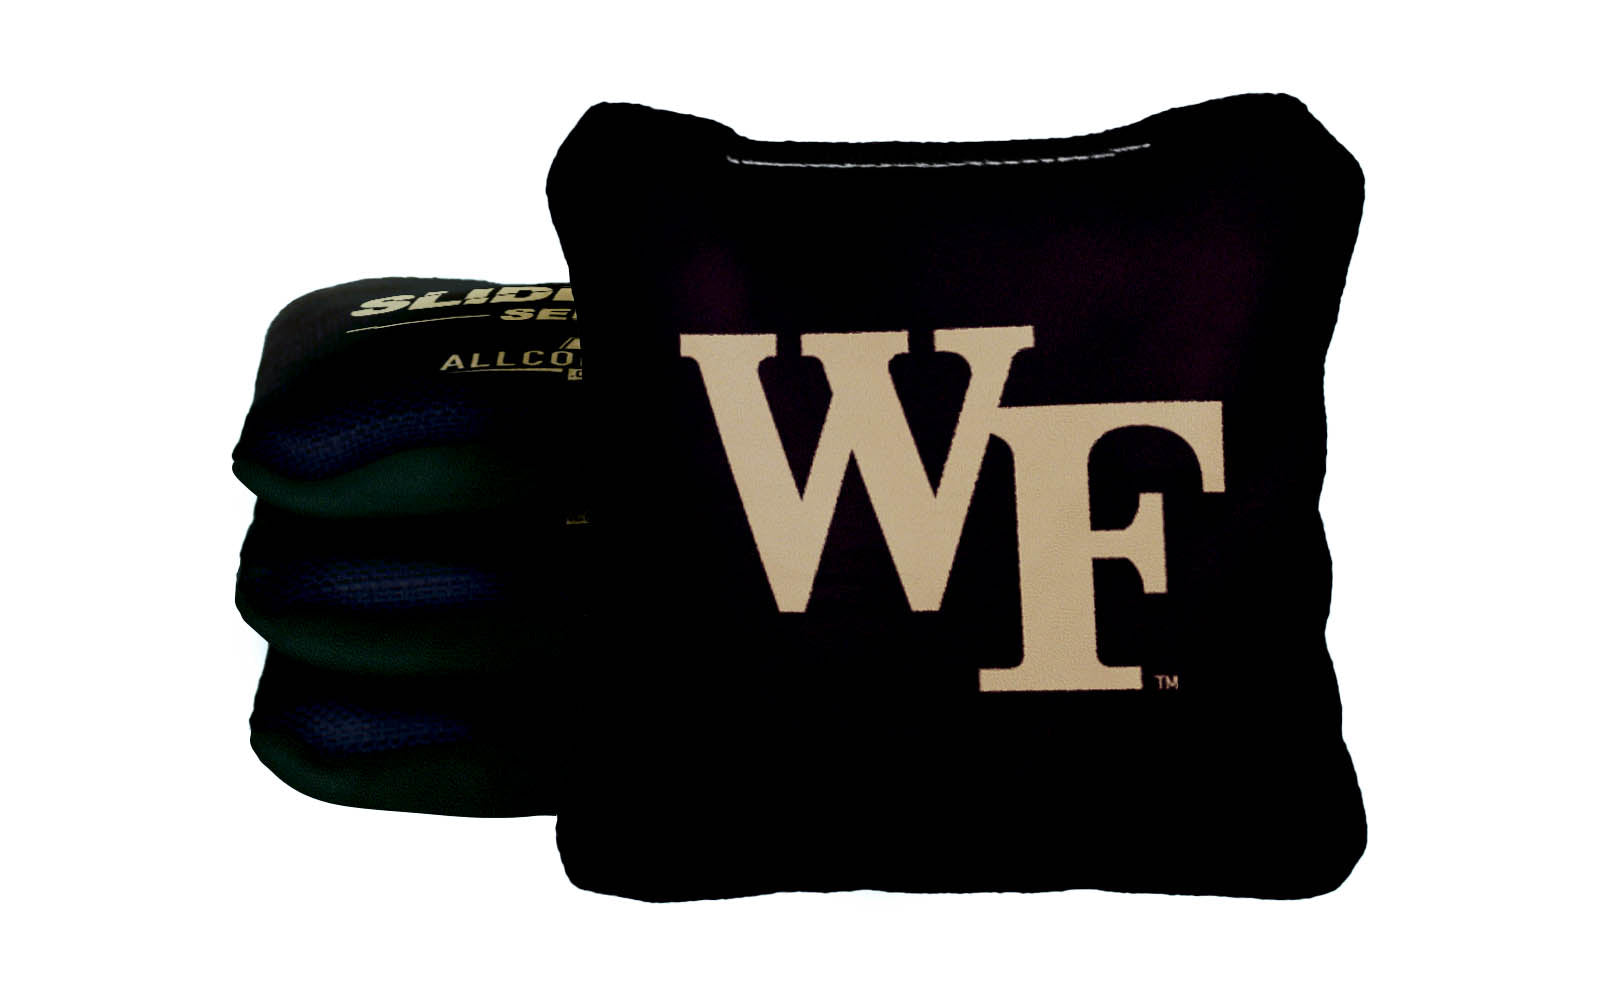 Officially Licensed Collegiate Cornhole Bags - AllCornhole Slide Rite - Set of 4 - Wake Forest University